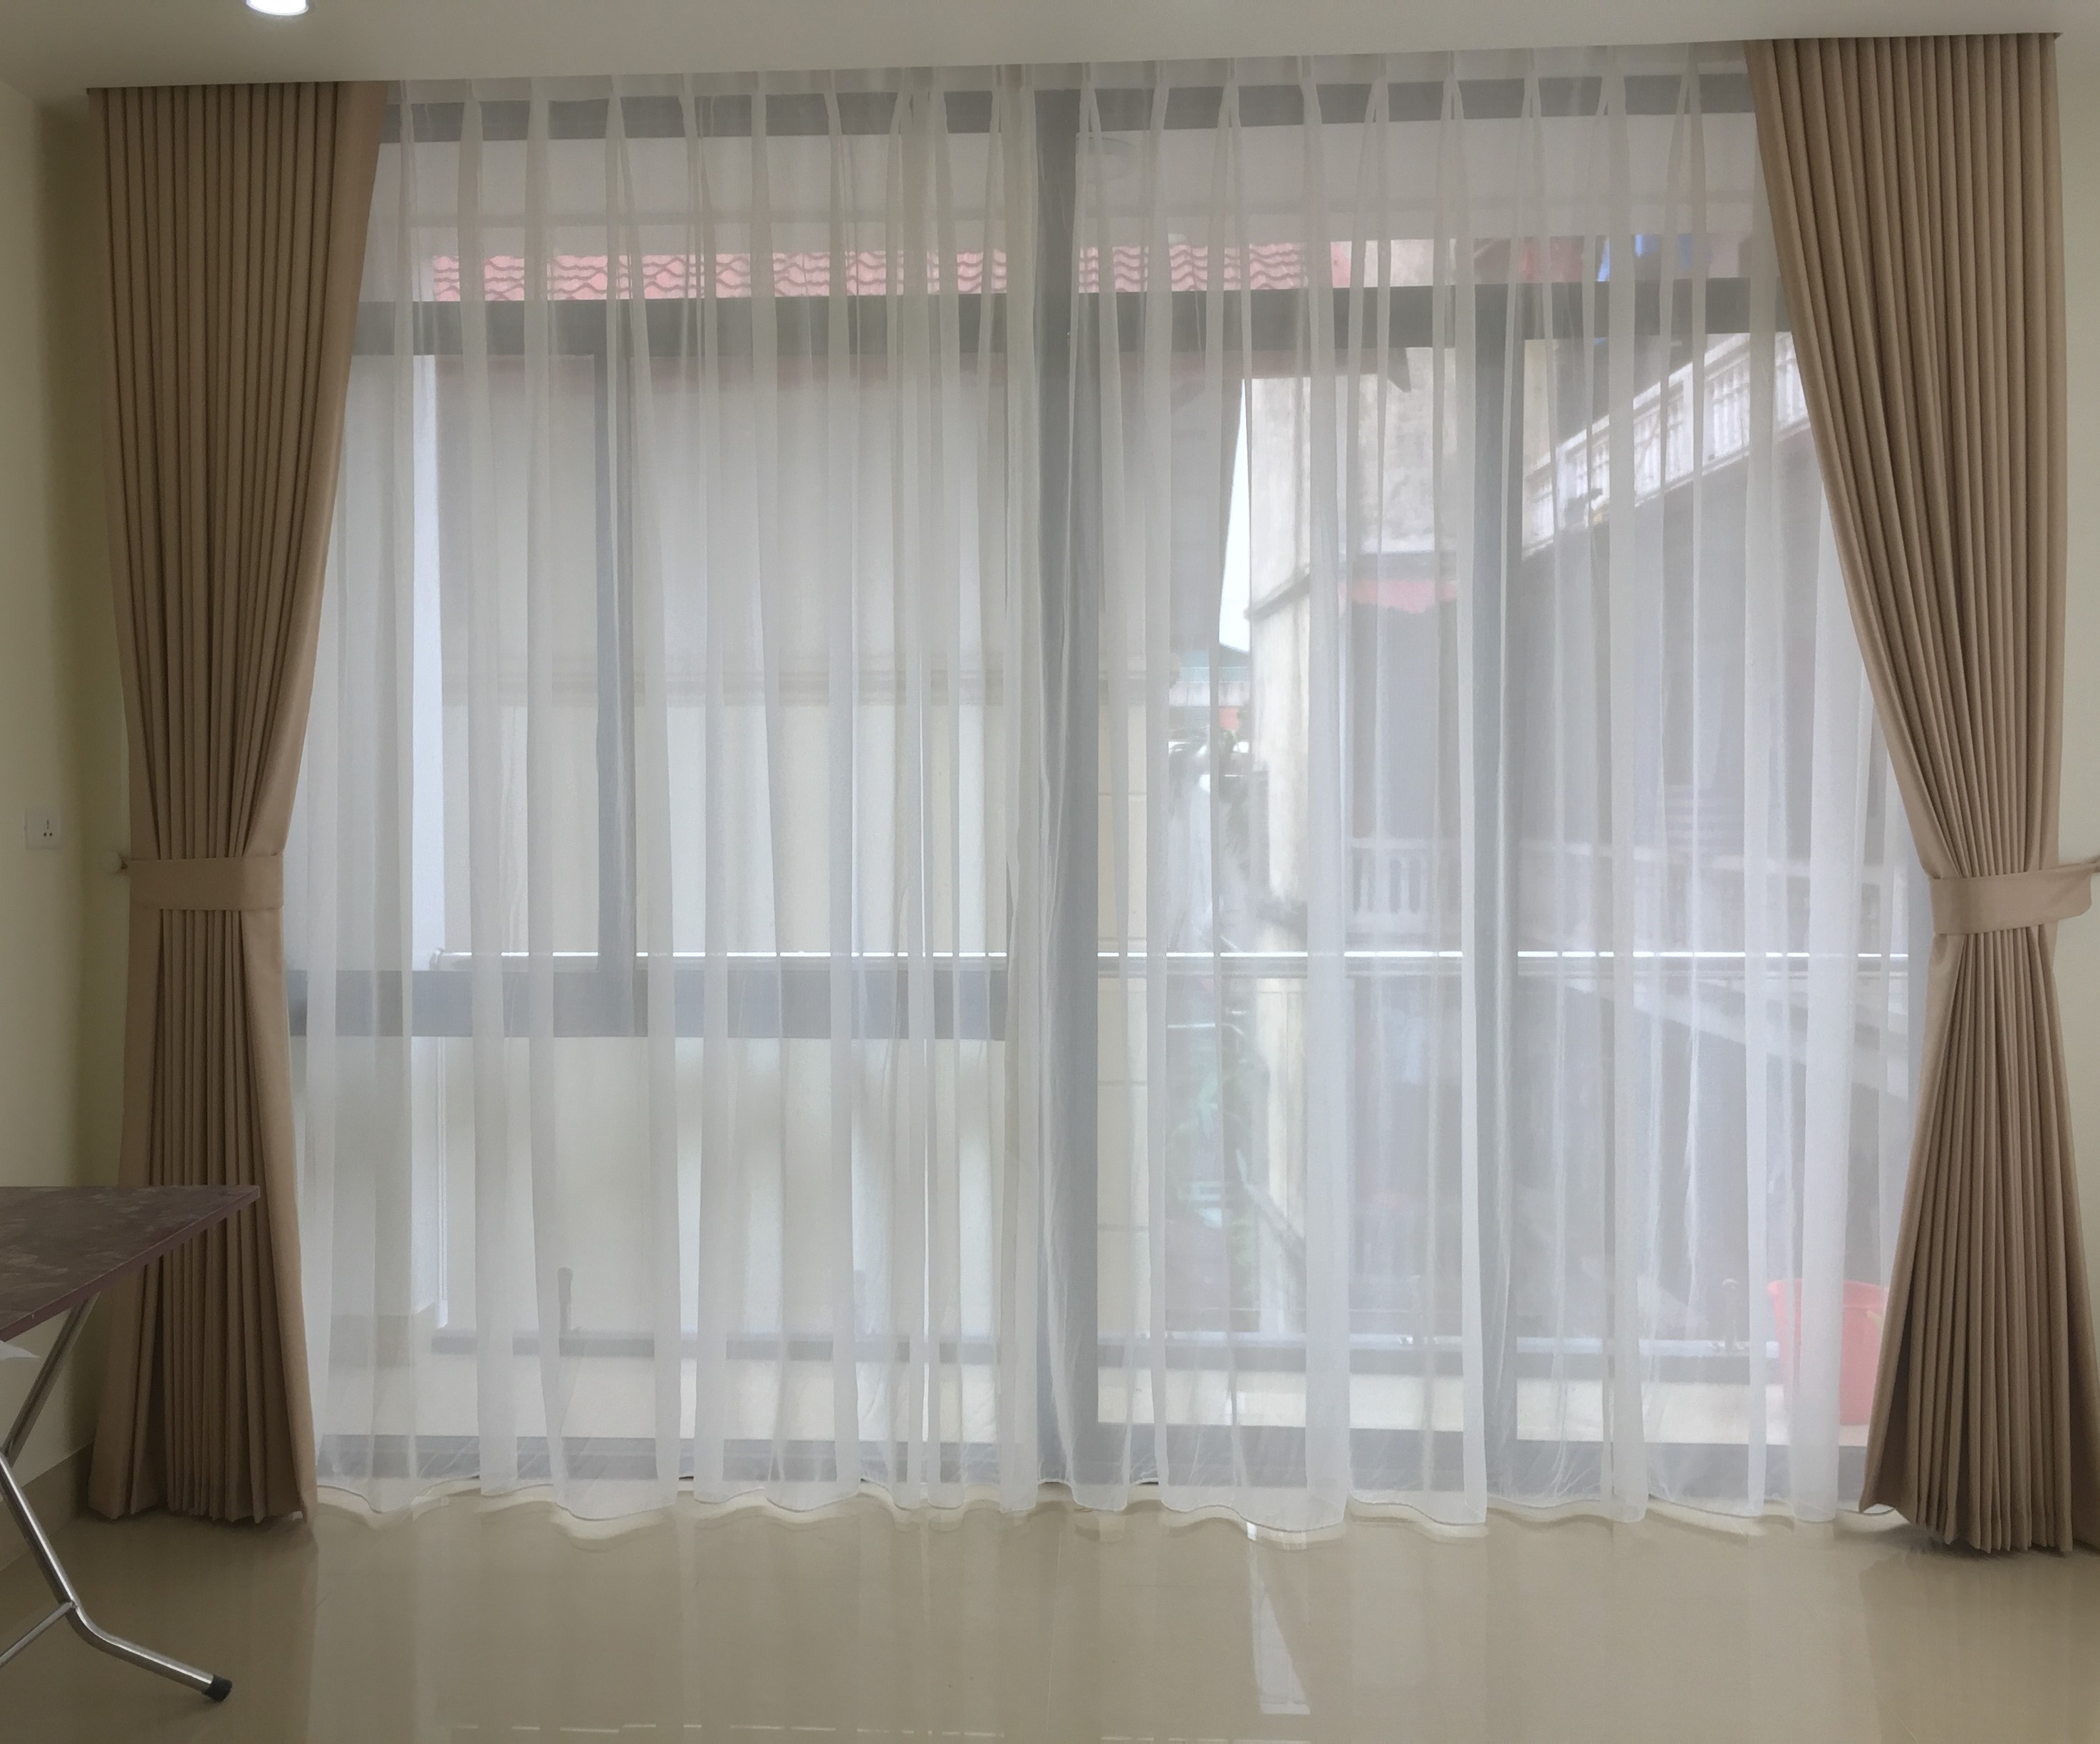 Rèm cửa: Thật đẹp mắt và tiện lợi khi bạn có một bộ rèm cửa phù hợp với thiết kế và không gian của ngôi nhà mình. Hãy cùng xem hình ảnh về rèm cửa để tìm cho mình một sự lựa chọn phù hợp nhé!